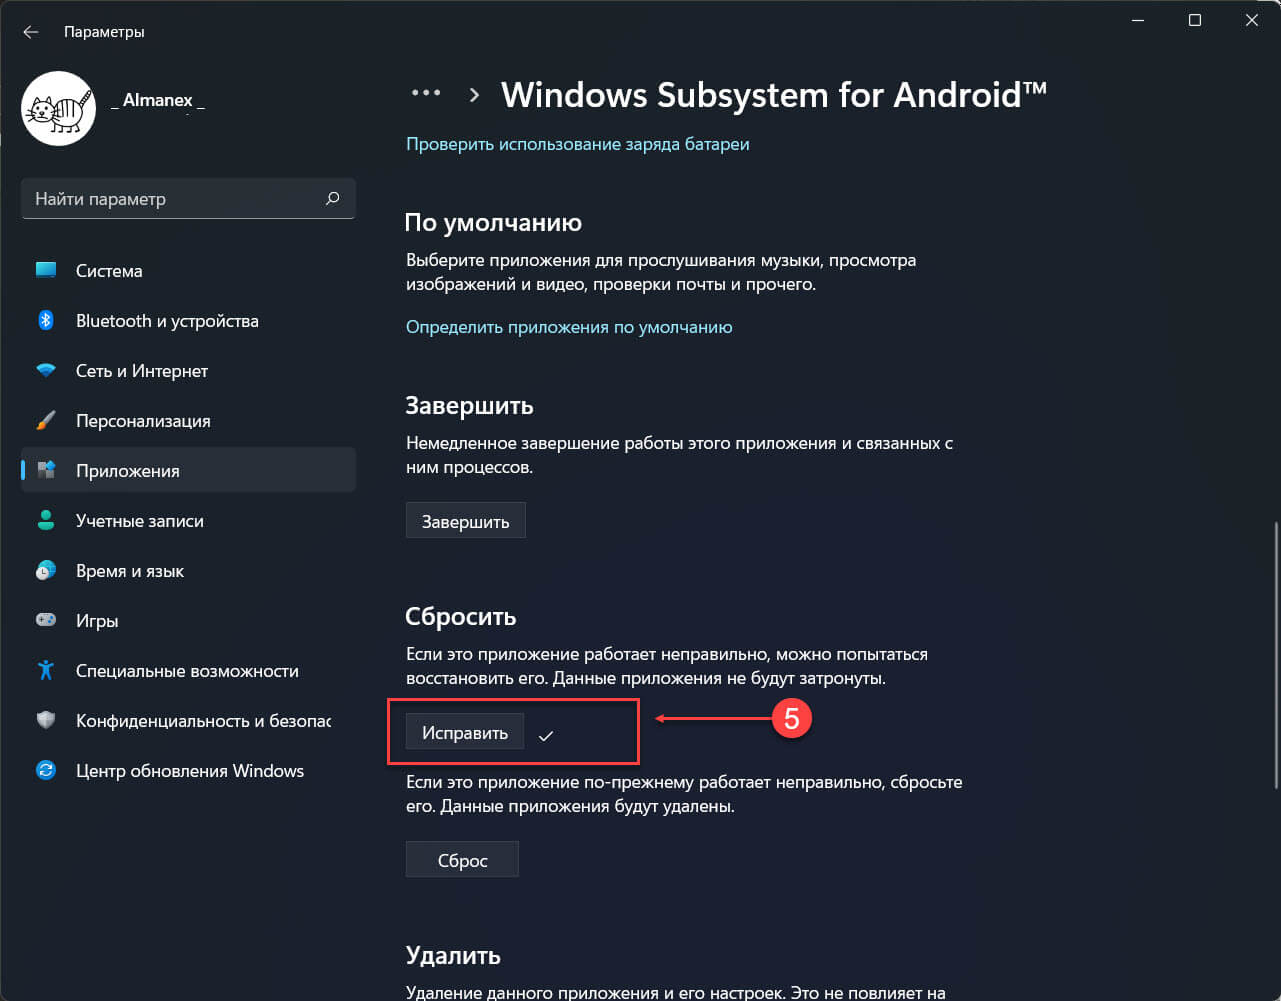 На странице параметров для Windows Subsystem for Android, в разделе «Сбросить» нажмите кнопку «Исправить»